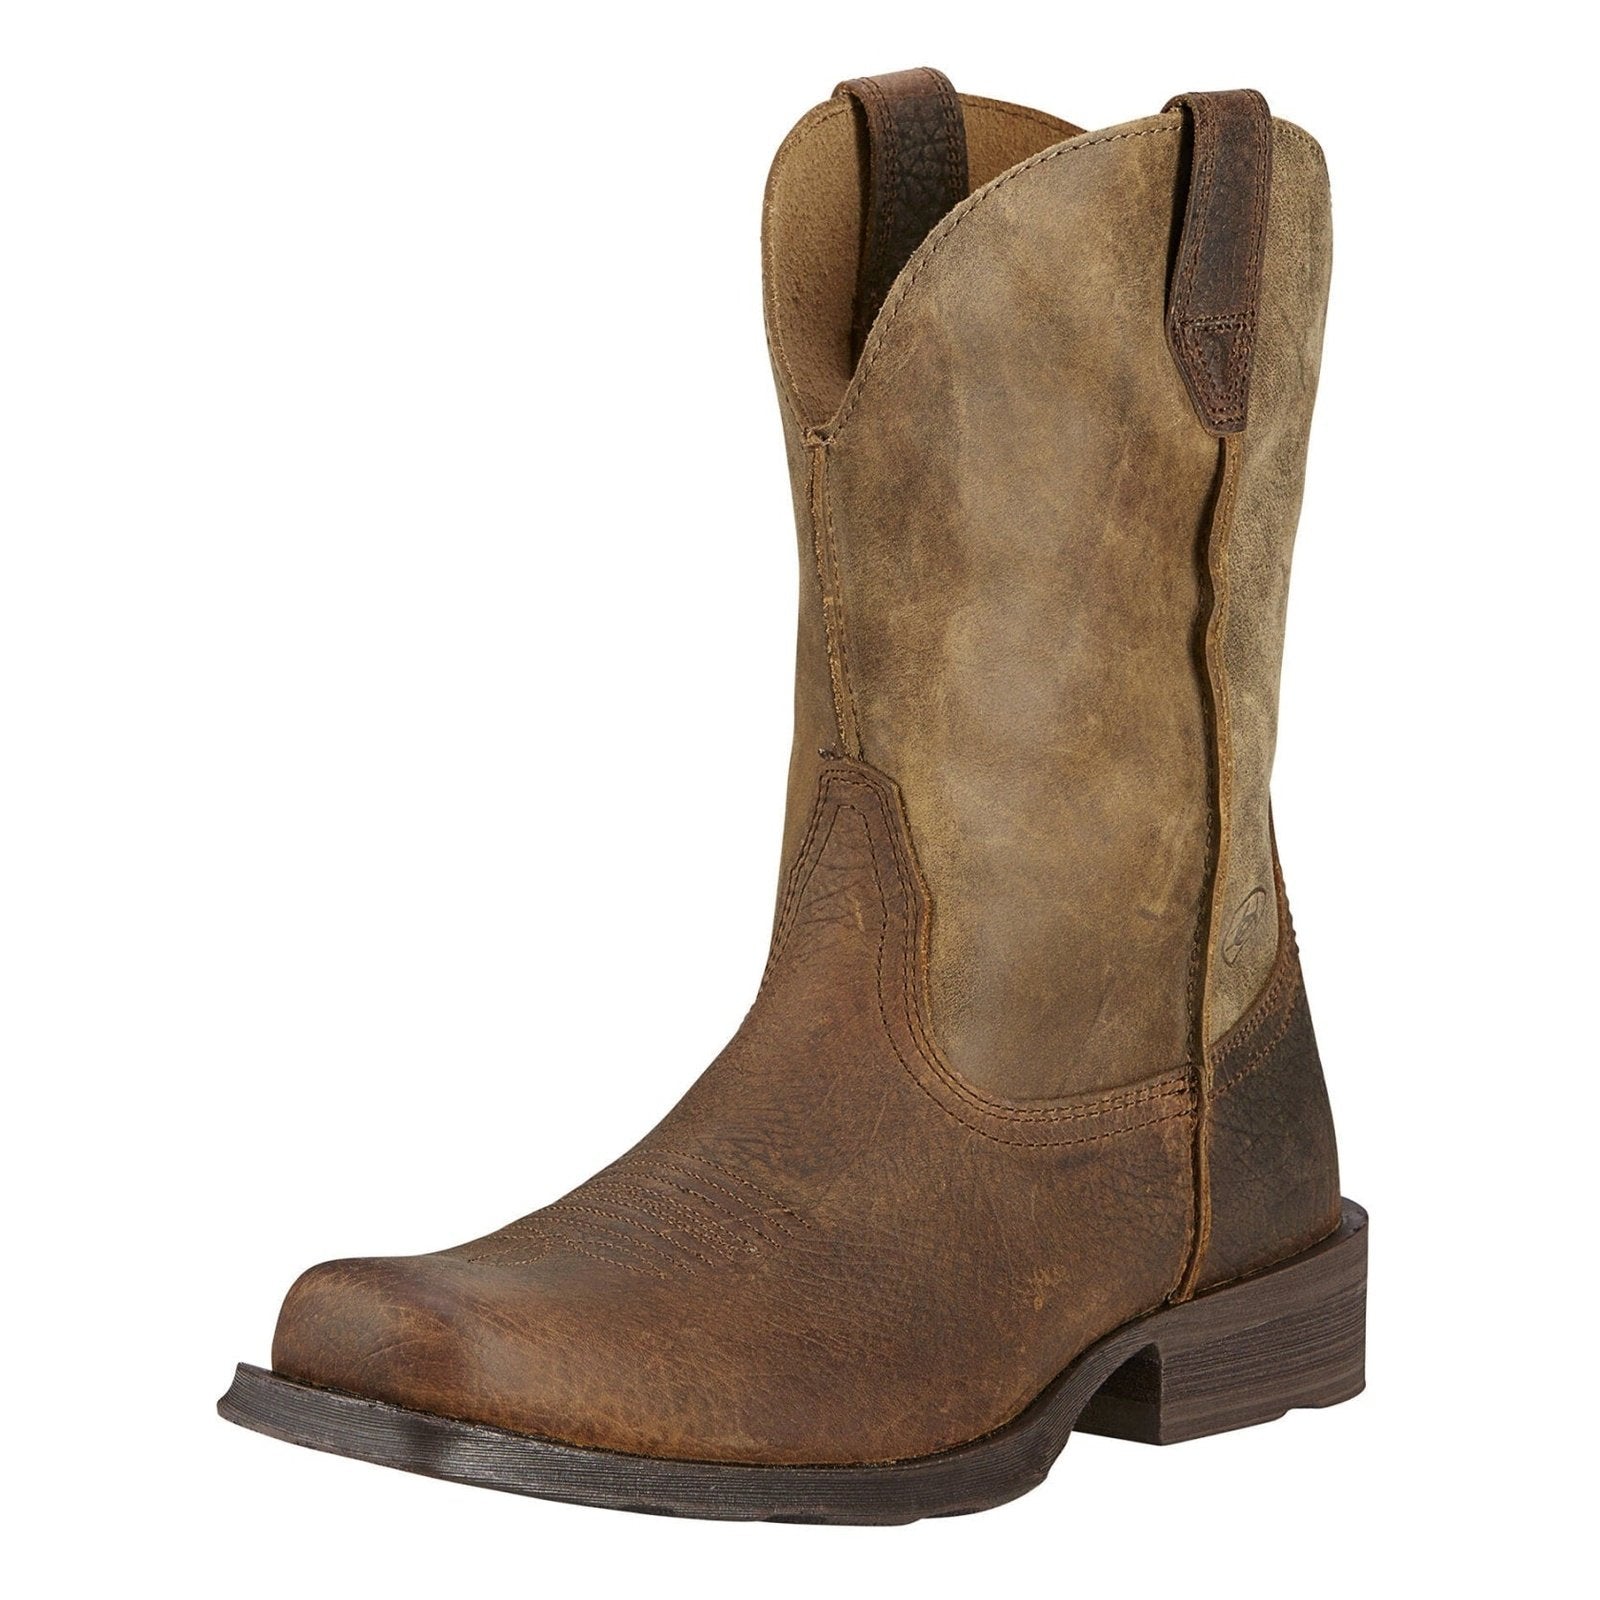 Ariat Men's Cowboy Boots 11" Rambler Square Toe 10002317 10015307